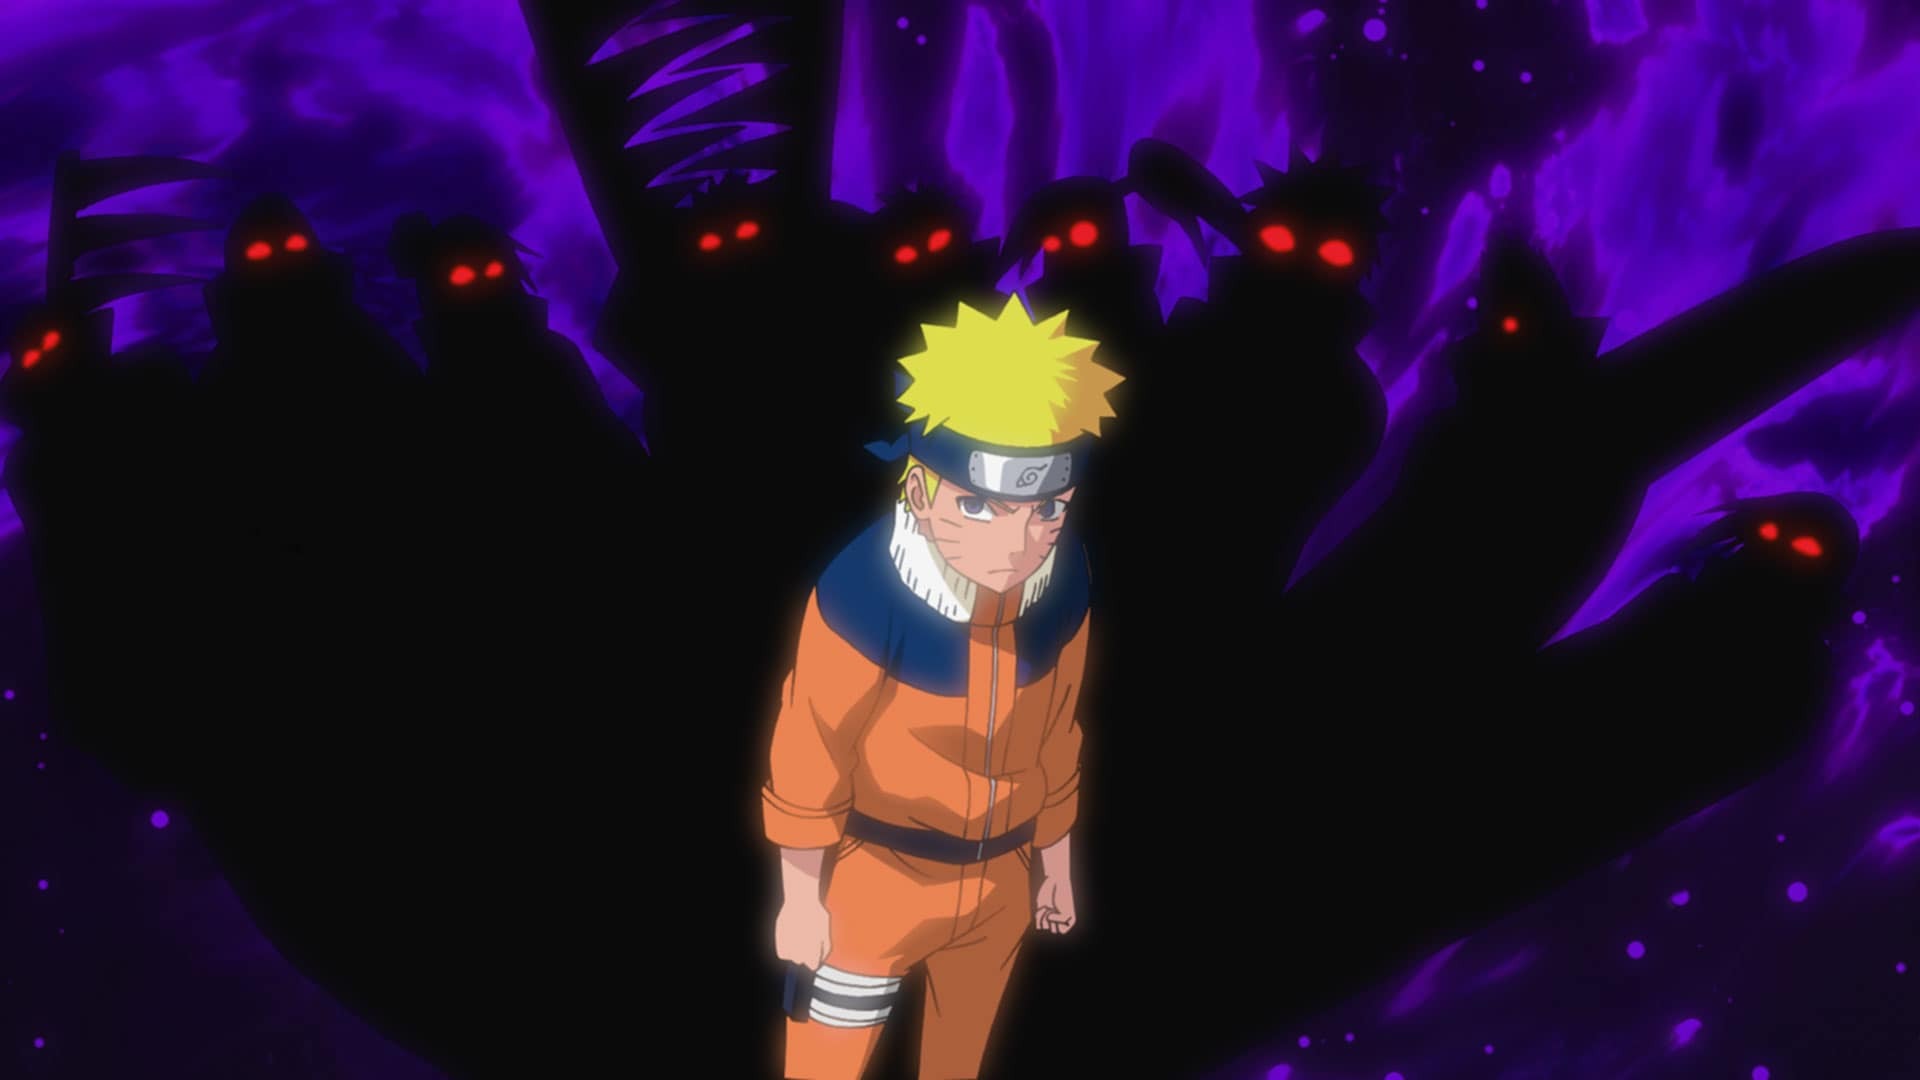 Naruto ナルト 疾風伝 ナルトの背中 仲間の軌跡 第614話 バンダイチャンネル 初回おためし無料のアニメ配信サービス